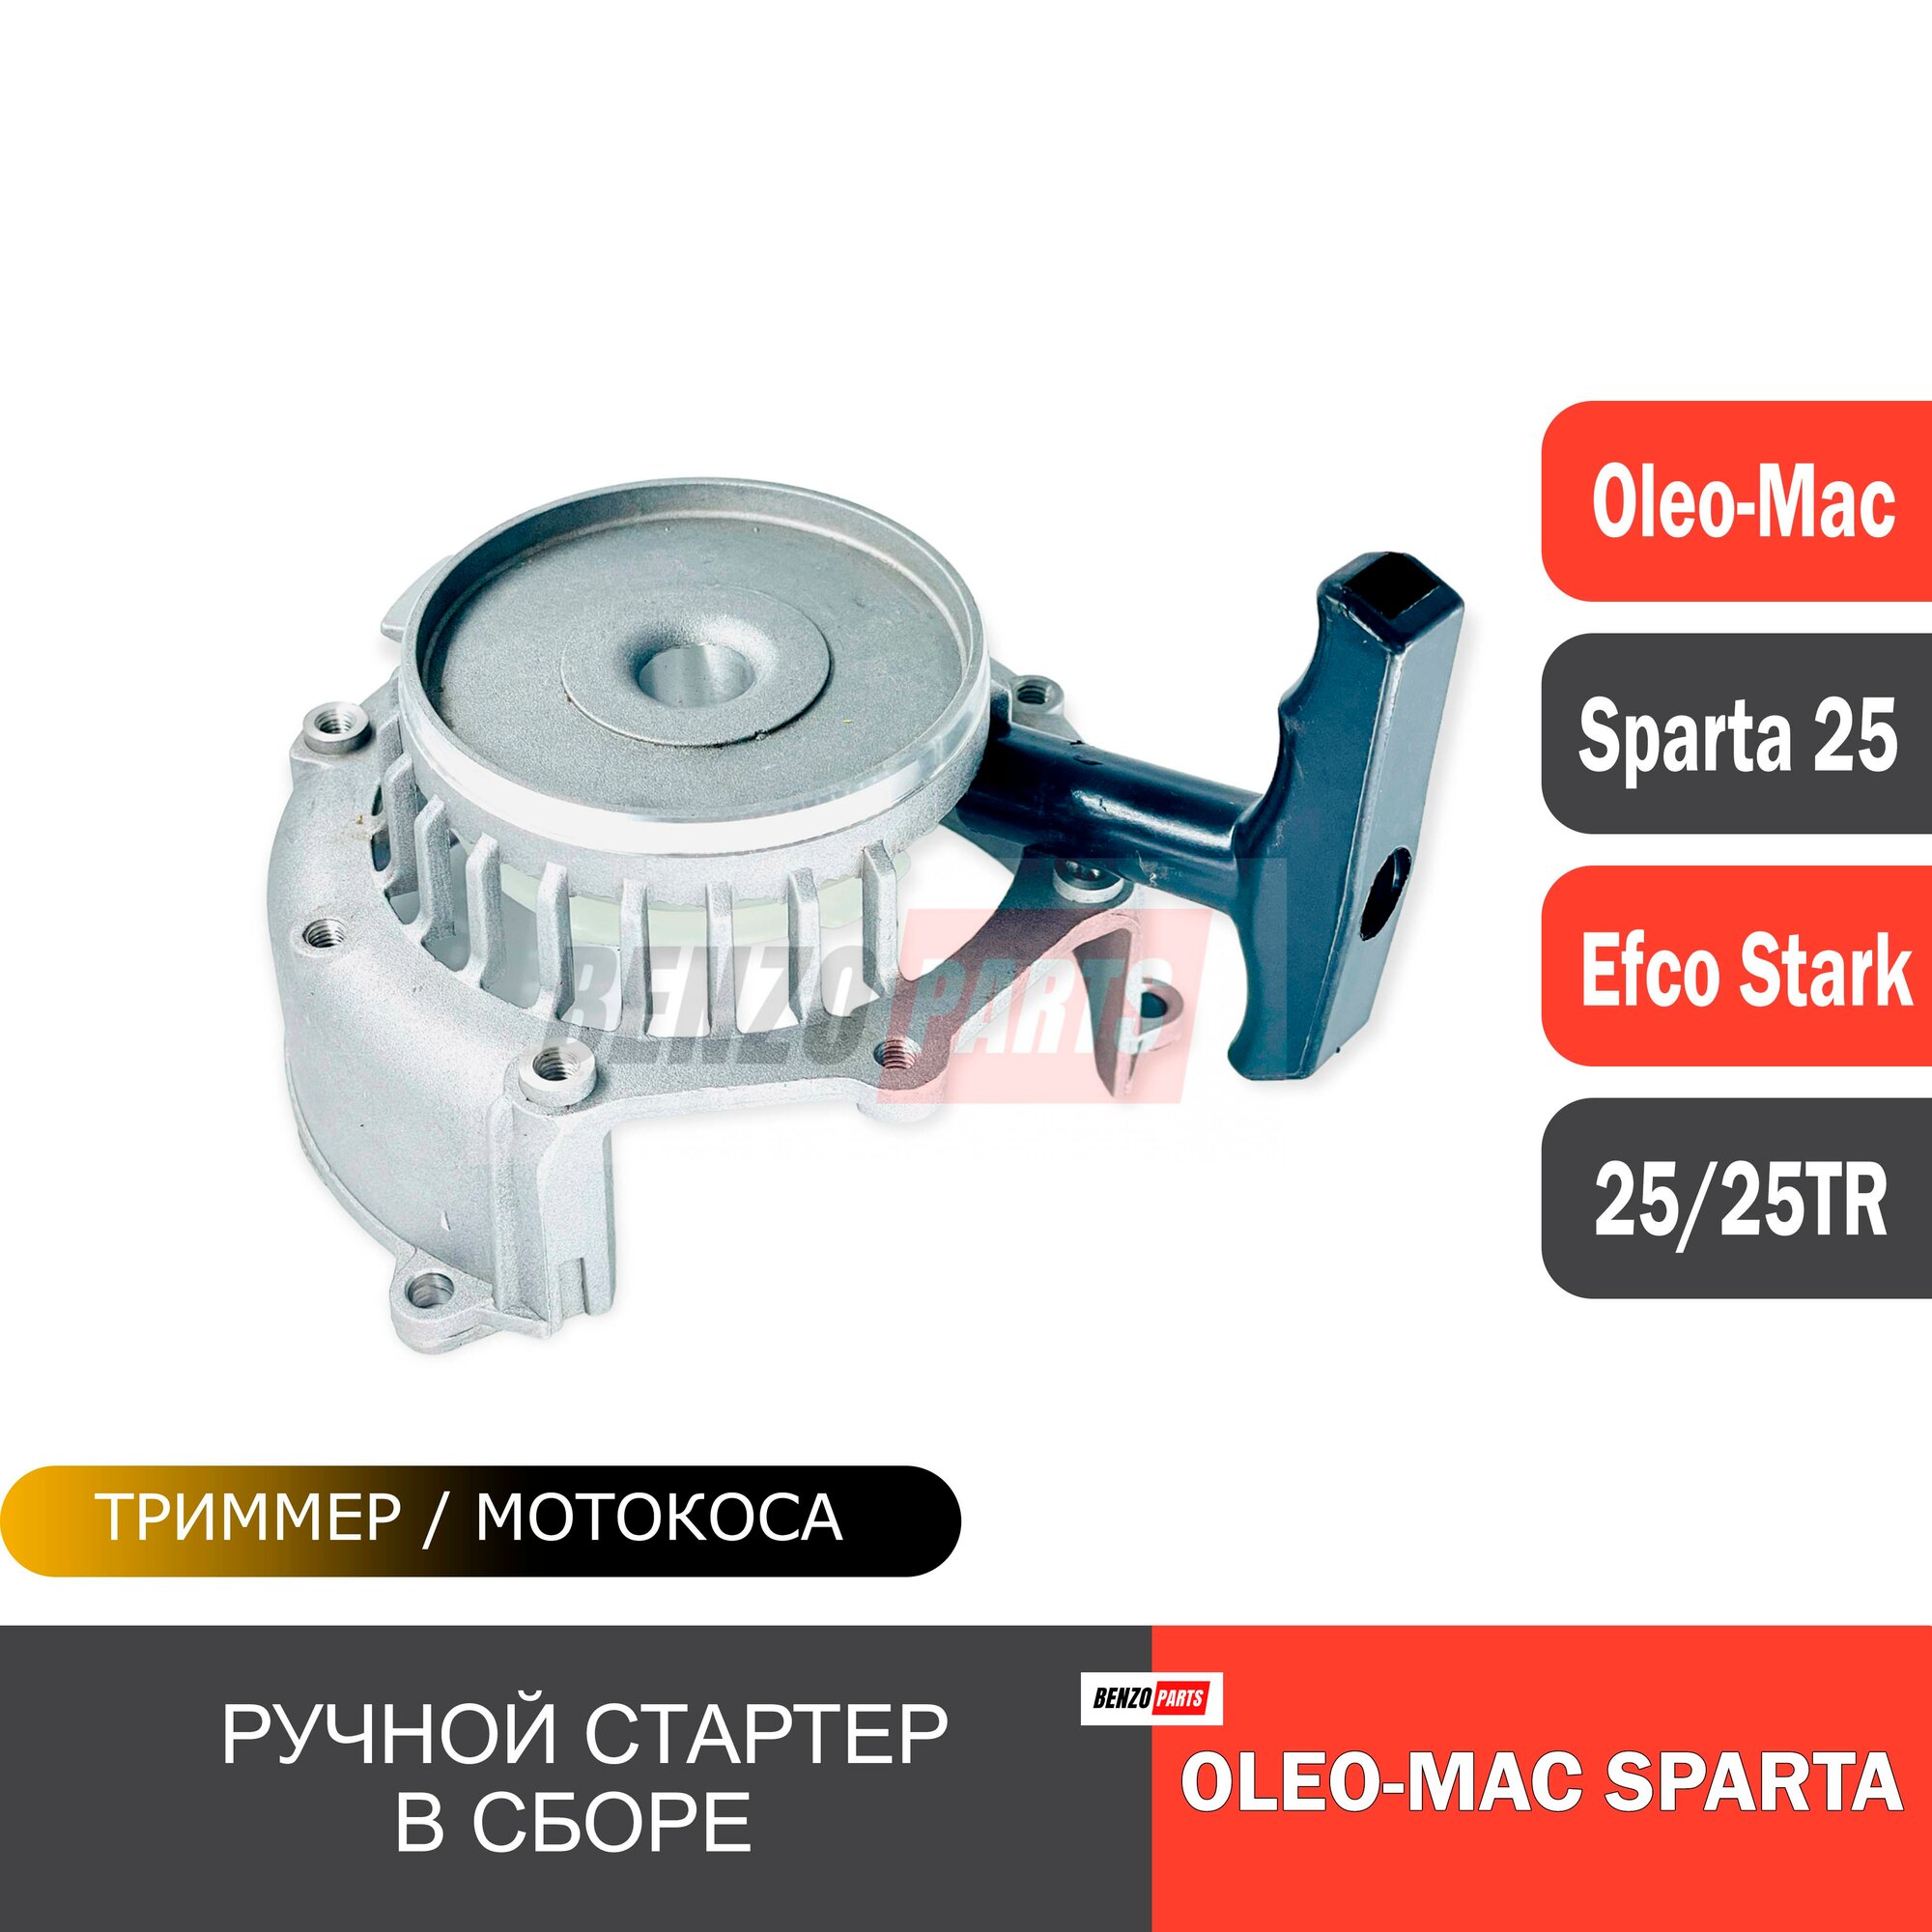 Ручной стартер в сборе для мотокос Efco Stark 25/ 25TR, Oleo-Mac Sparta 25/ 25TR